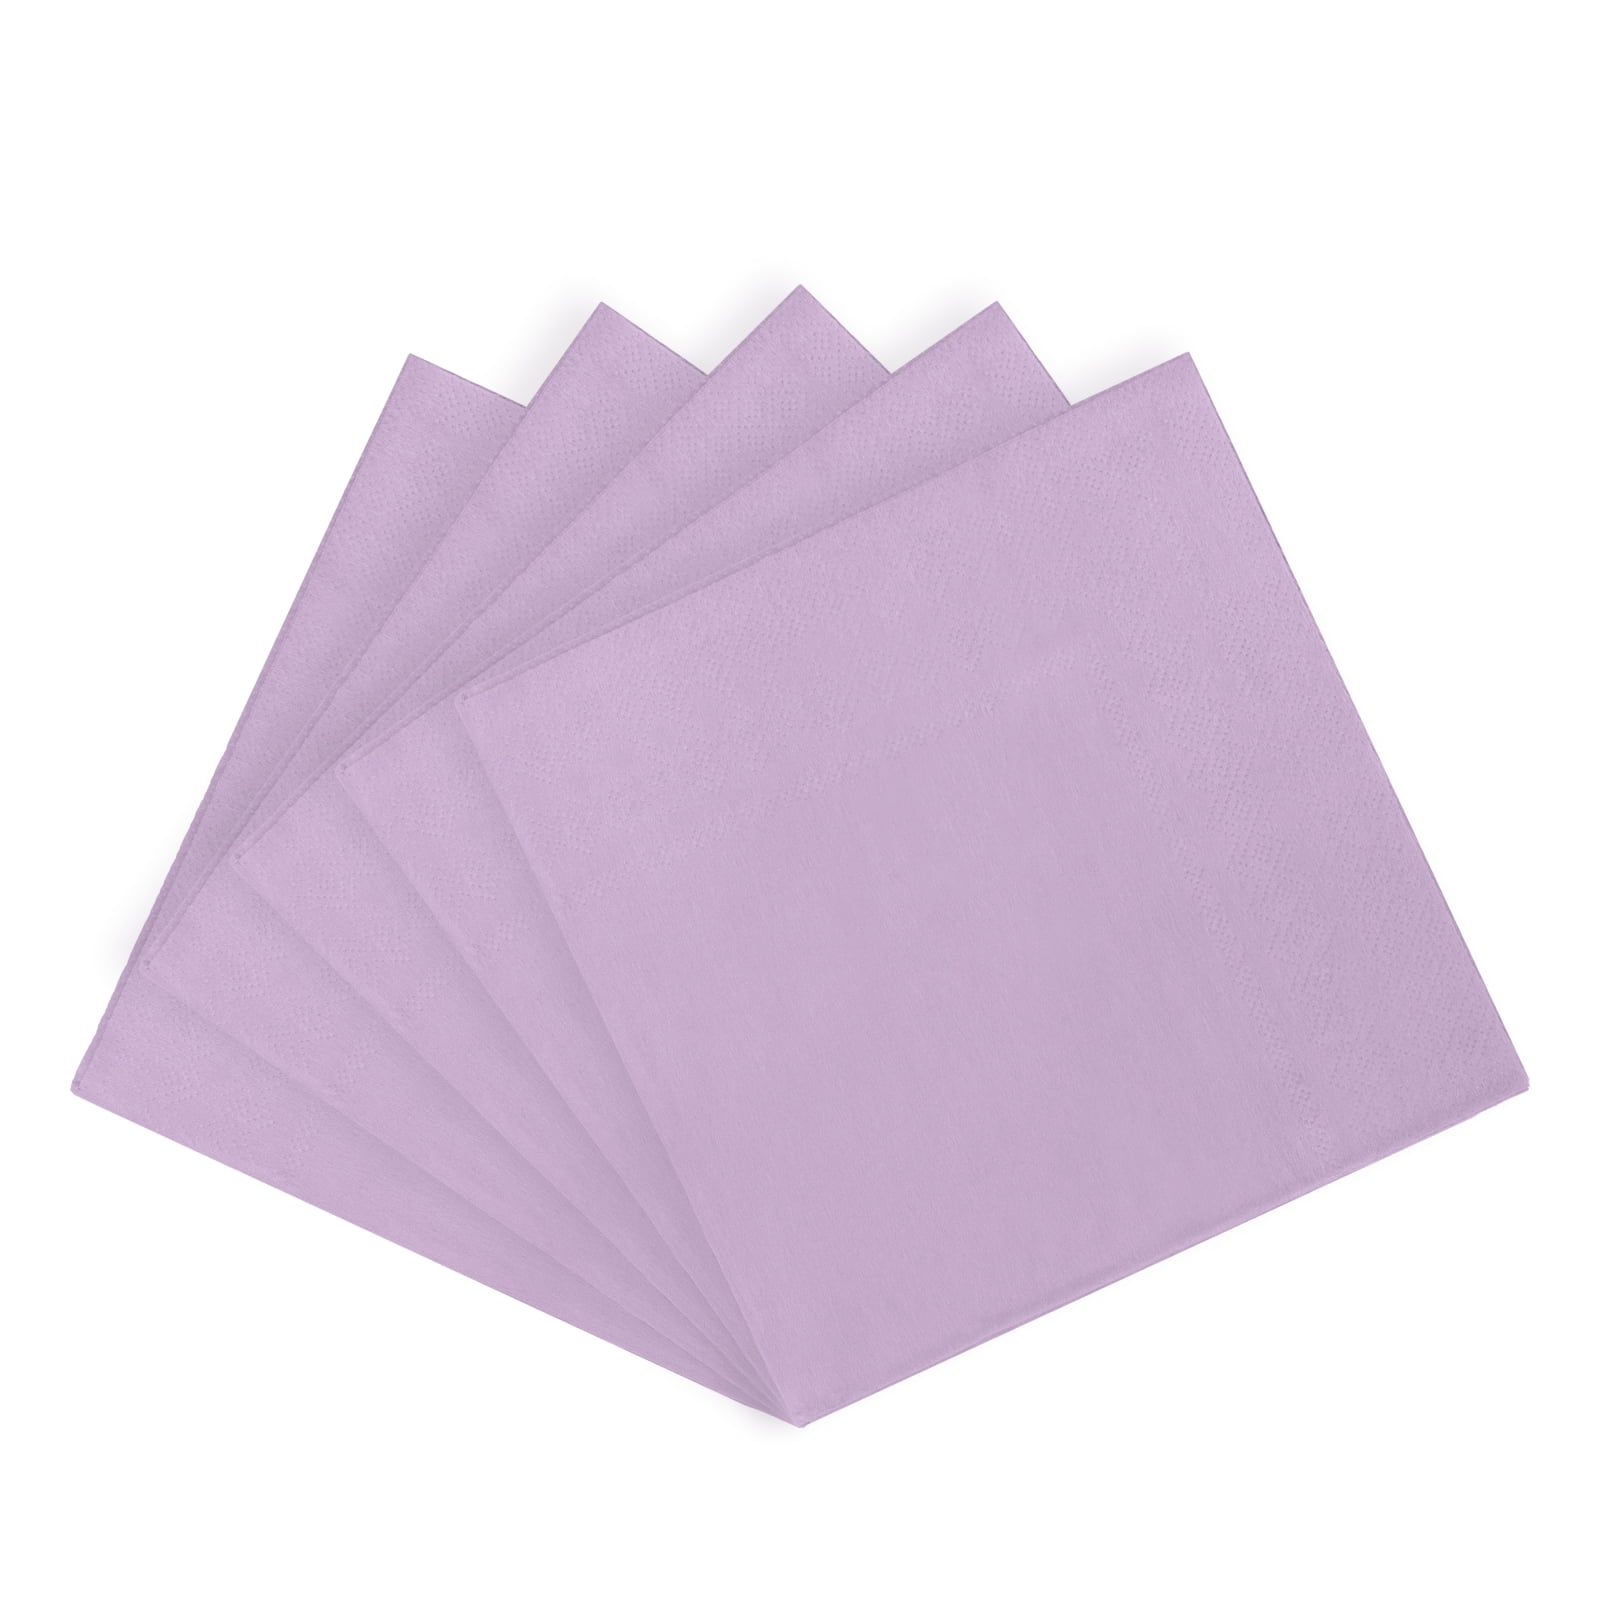 Serviettes for Decoupage 2 Paper Napkins Lavender Pots Parties /Weddings 